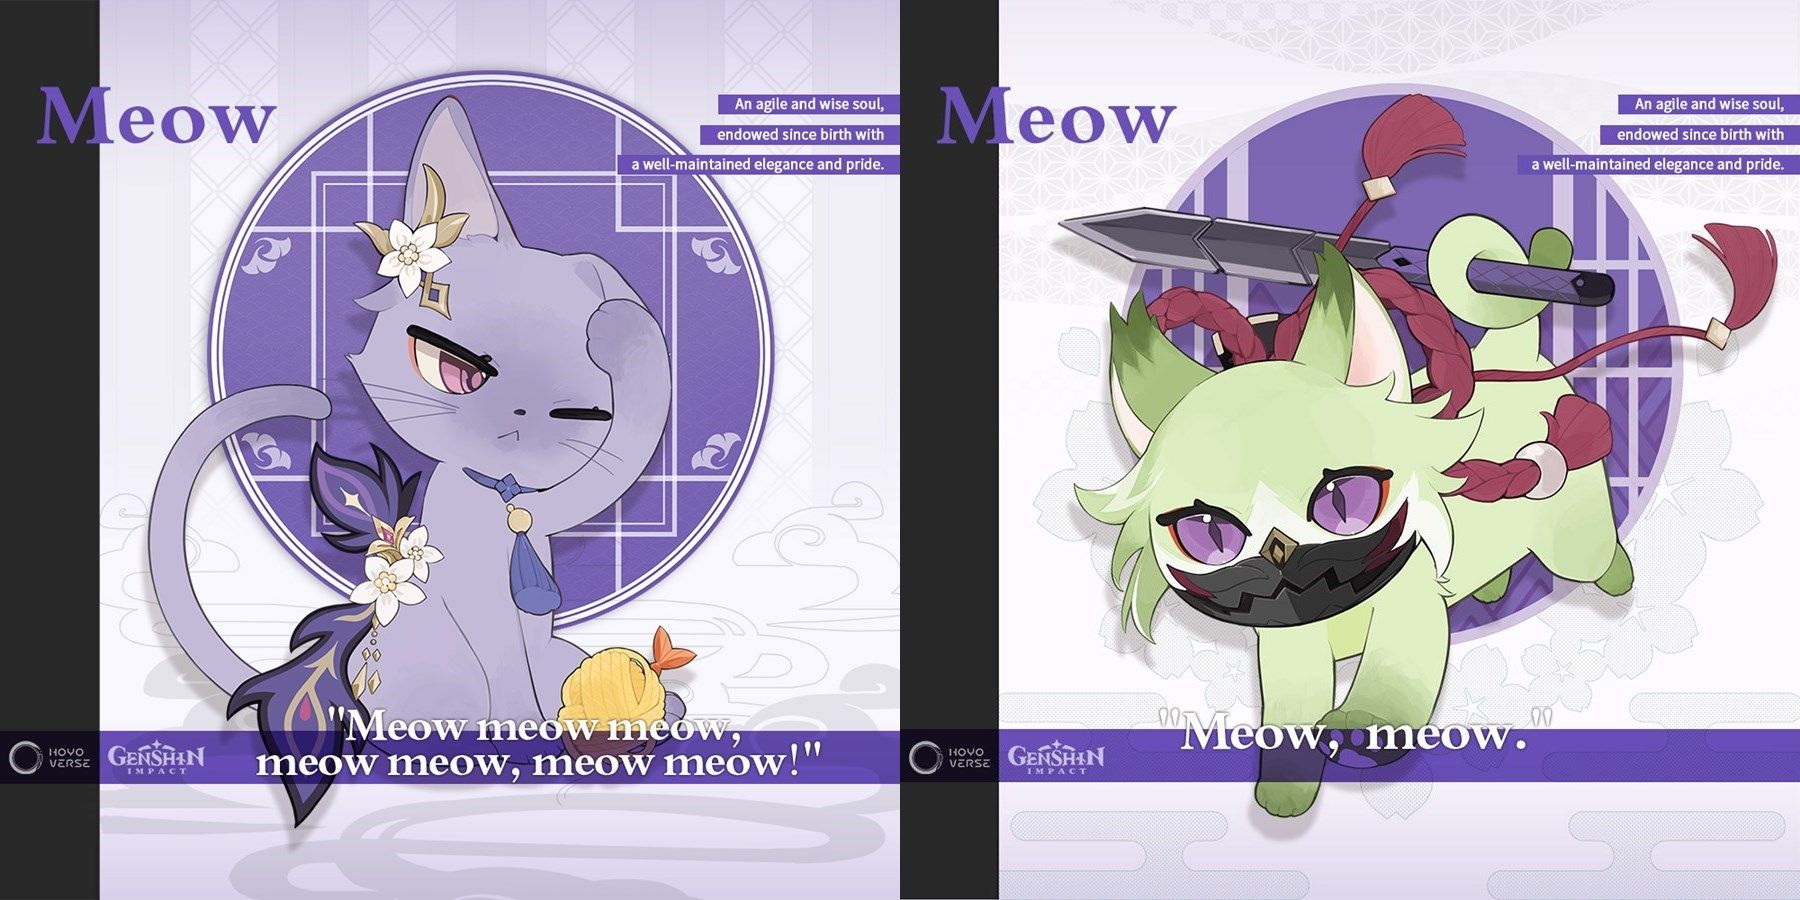 Genshin Impact cat versions of Keqing and Kuki Shinobu